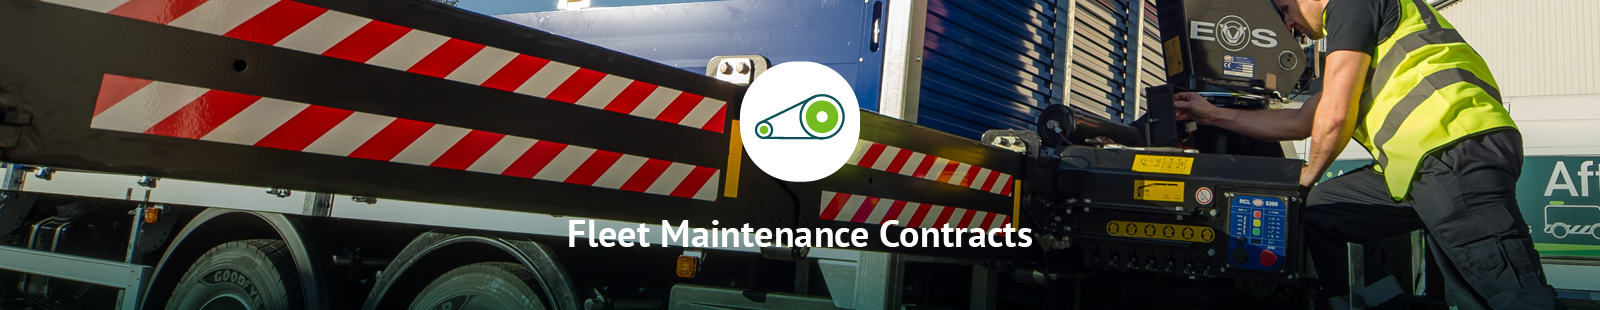 Fleet Maintenance Contracts